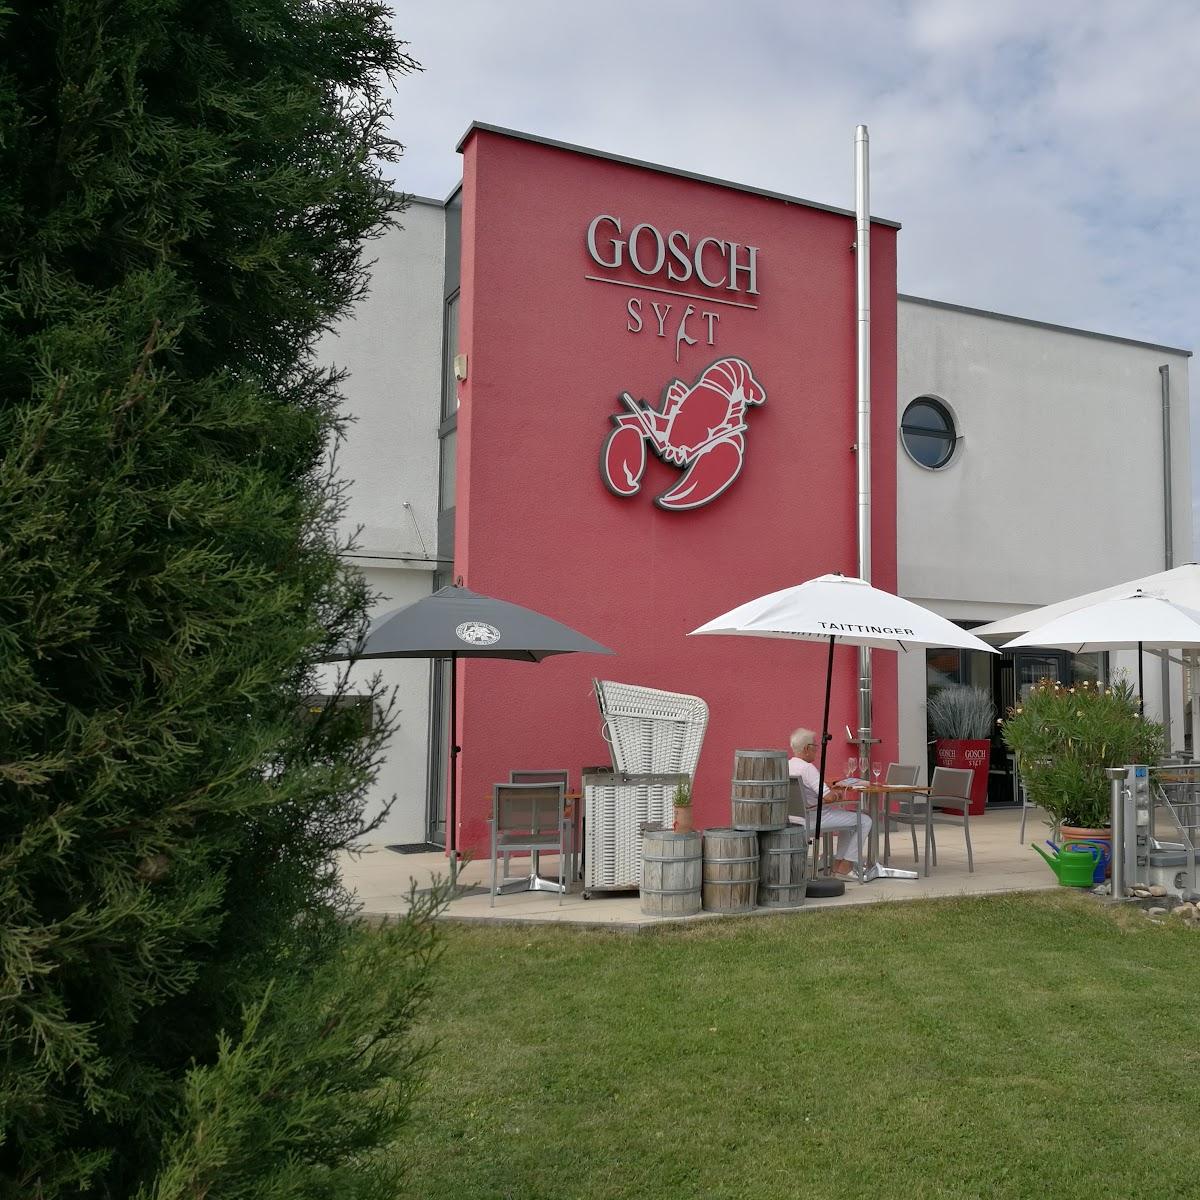 Restaurant "Gosch-Sylt am Schönenberg" in Freudental